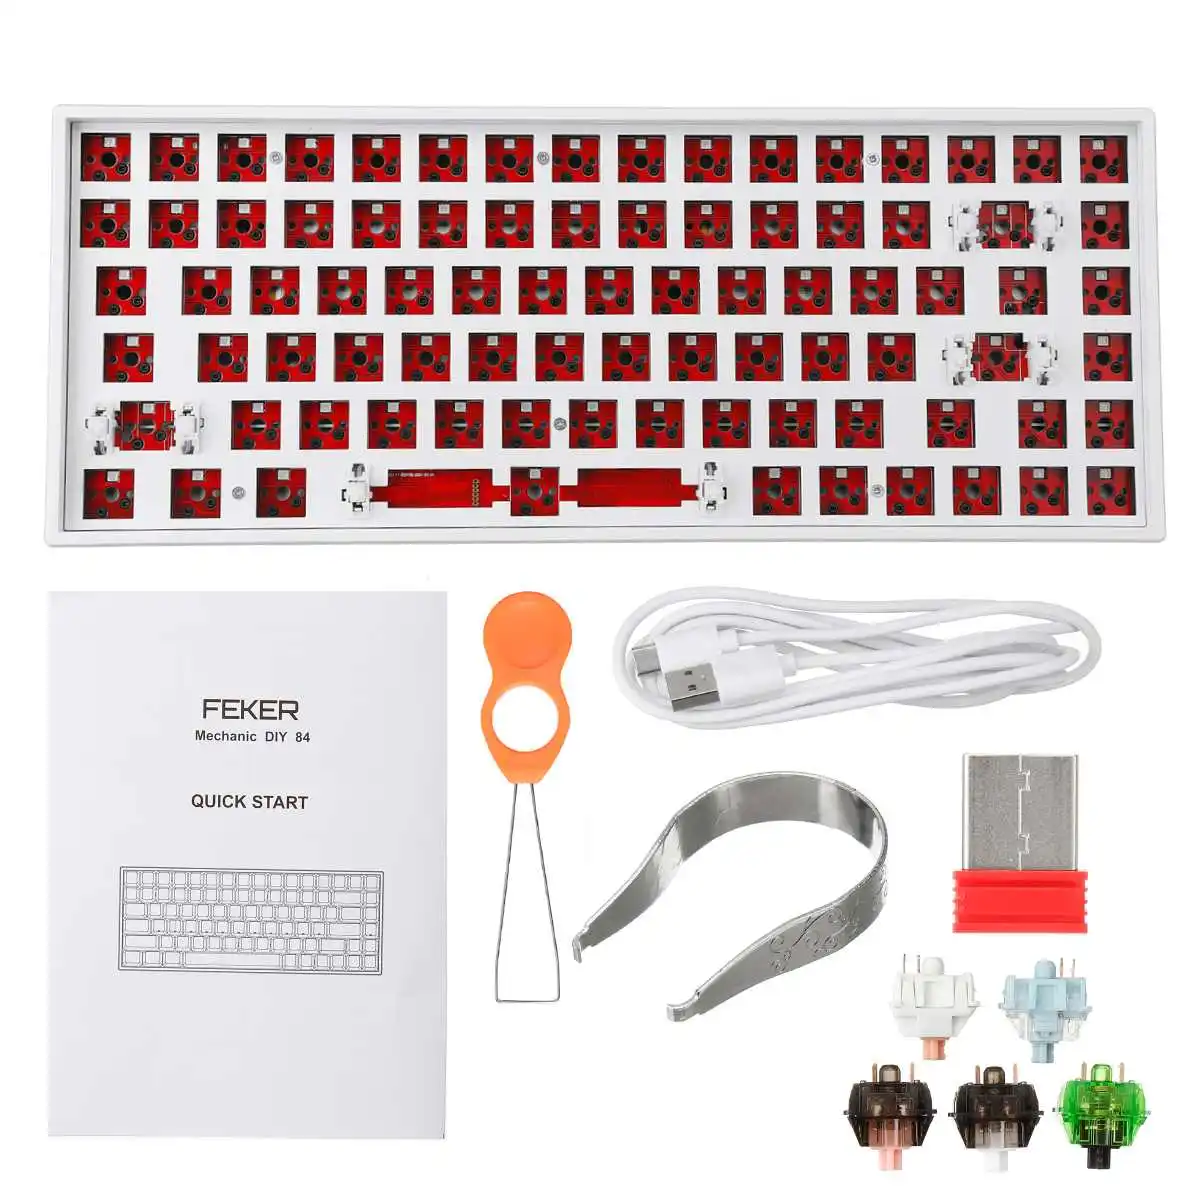 

DIY FEKER Keyboard Customized Kit Triple Mode 84 Keys Hotswap bluetooth 2.4Ghz NKRO Backlit Mute Cotton Mechanical Keyboard Kit